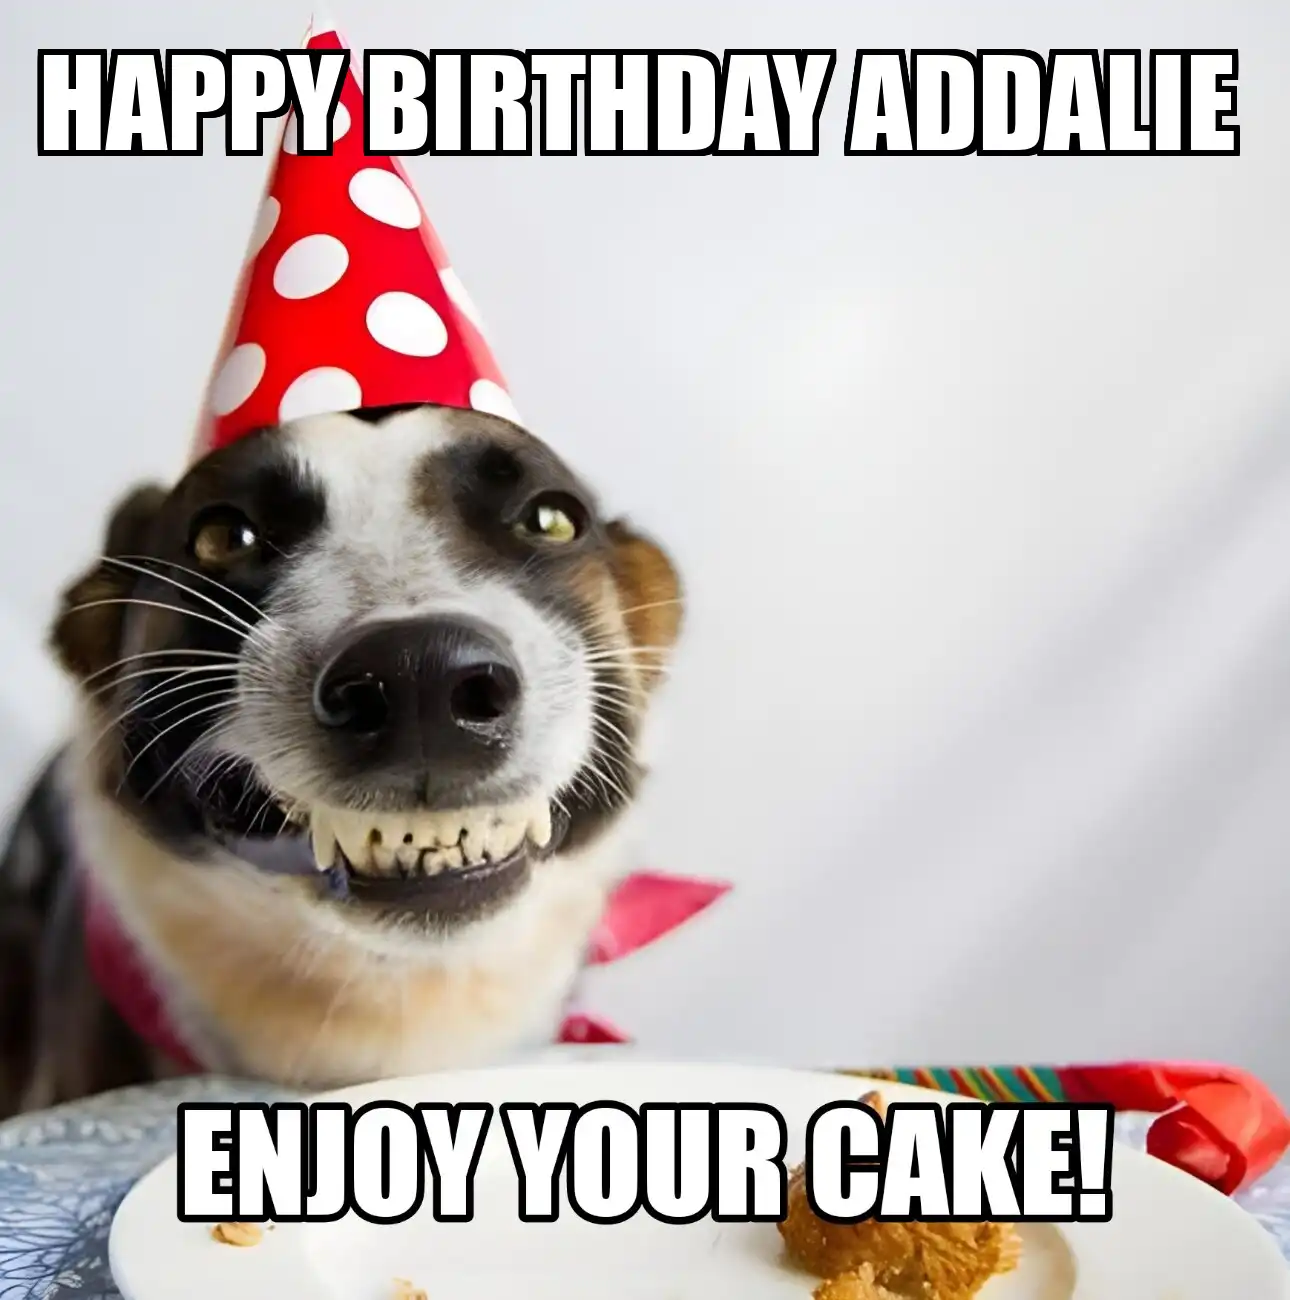 Happy Birthday Addalie Enjoy Your Cake Dog Meme